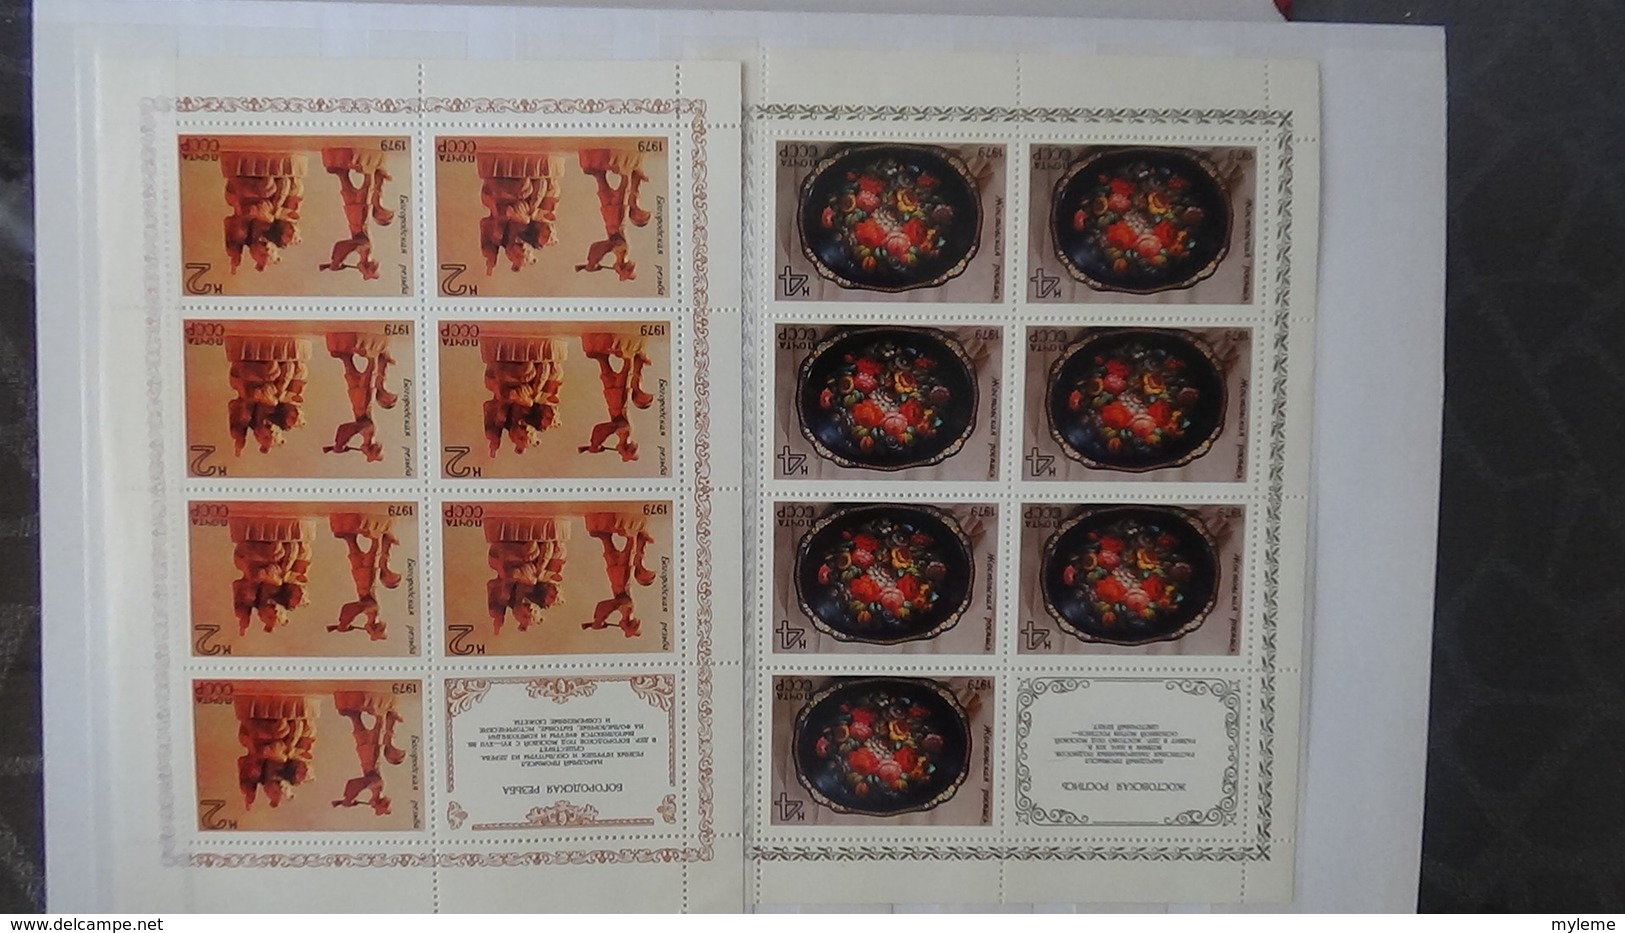 Gros album (60 photos) de timbres et 140 blocs ** de divers pays dont quelques NON DENTELES. Côte très sympa